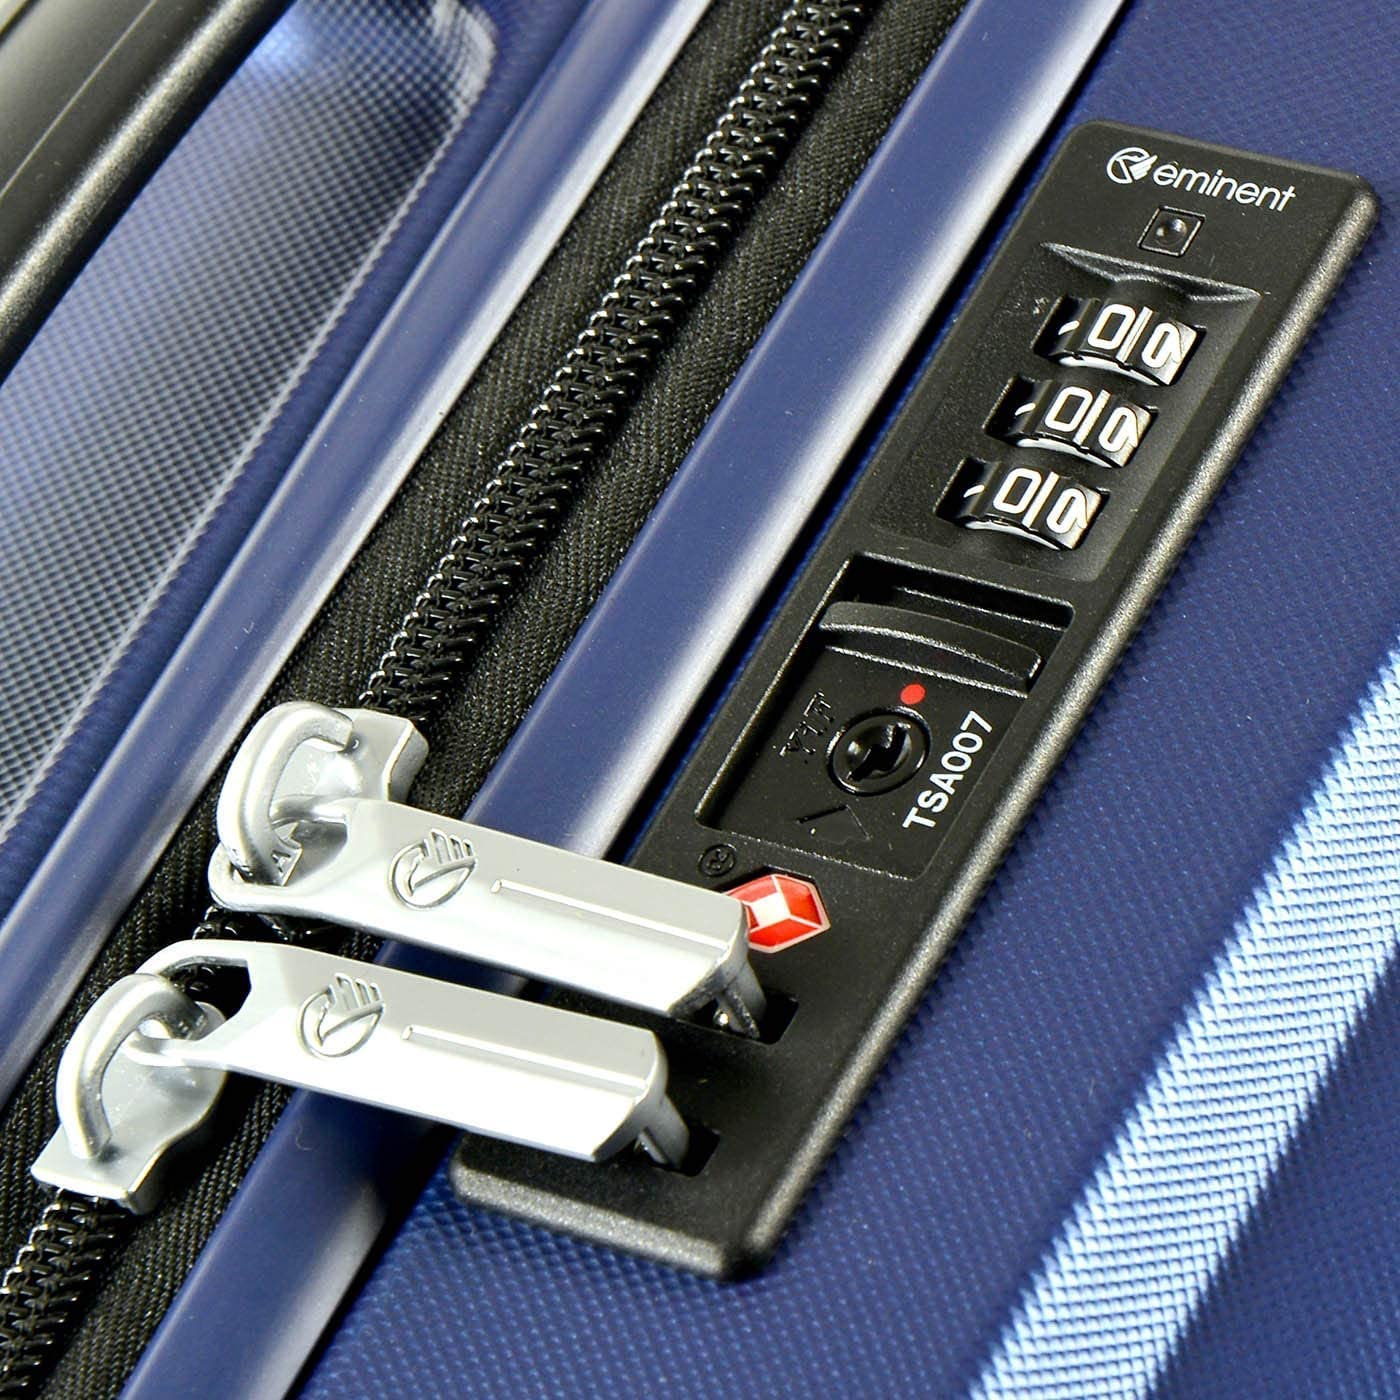 Eminent KH16-24 Hard Casing Medium Luggage Trolley 61cm Aqua Blue